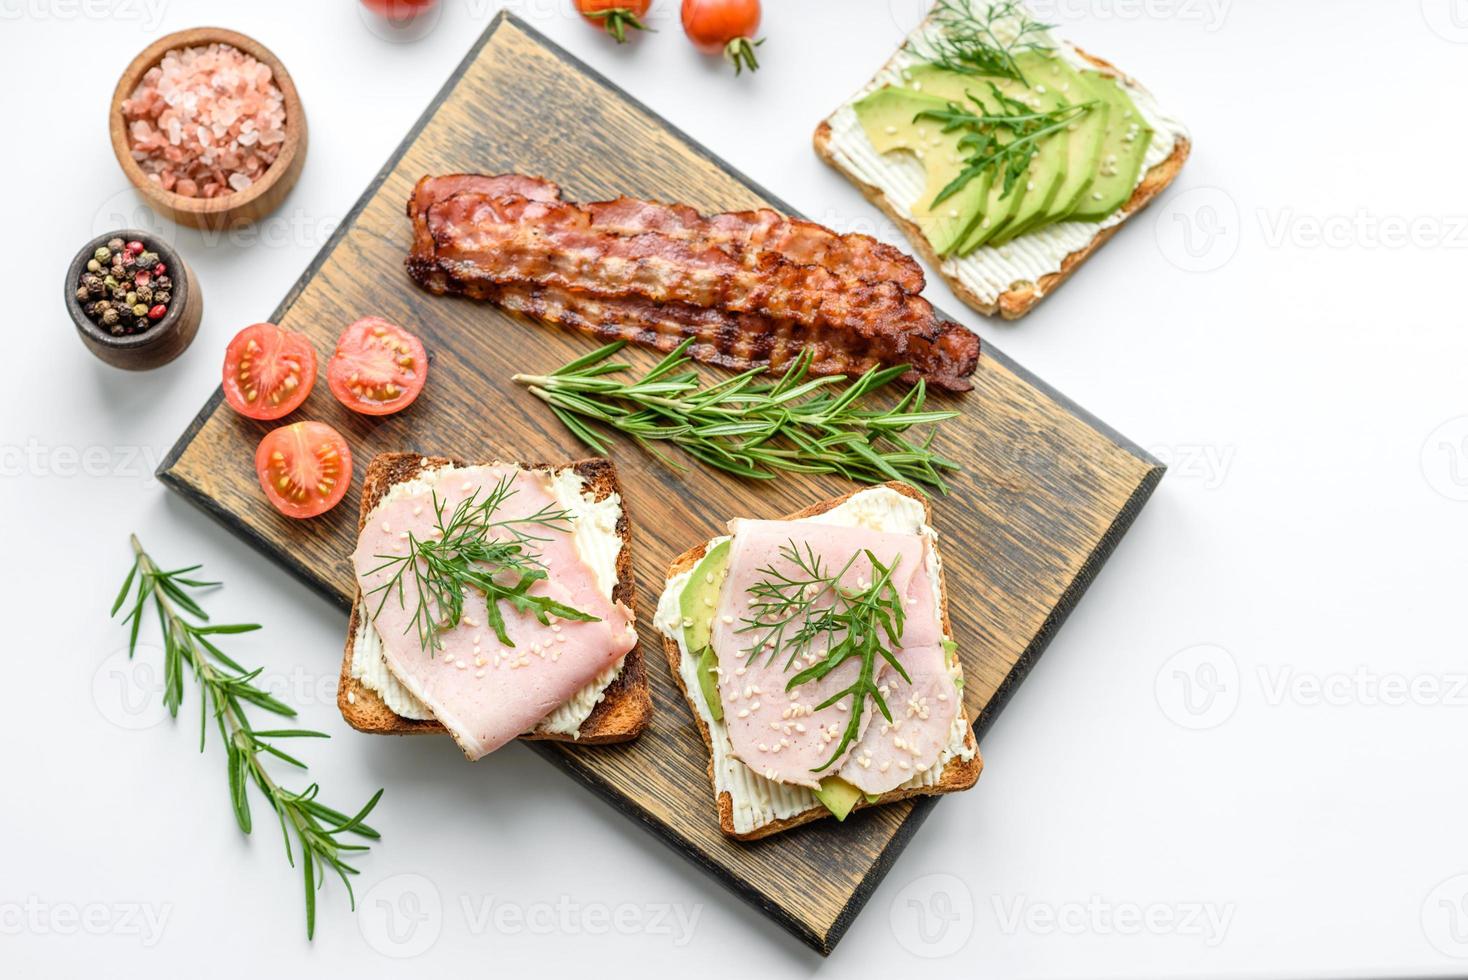 färsk, utsökt skinka, Smör, avokado och sesam frön smörgåsar på en trä- skärande styrelse foto